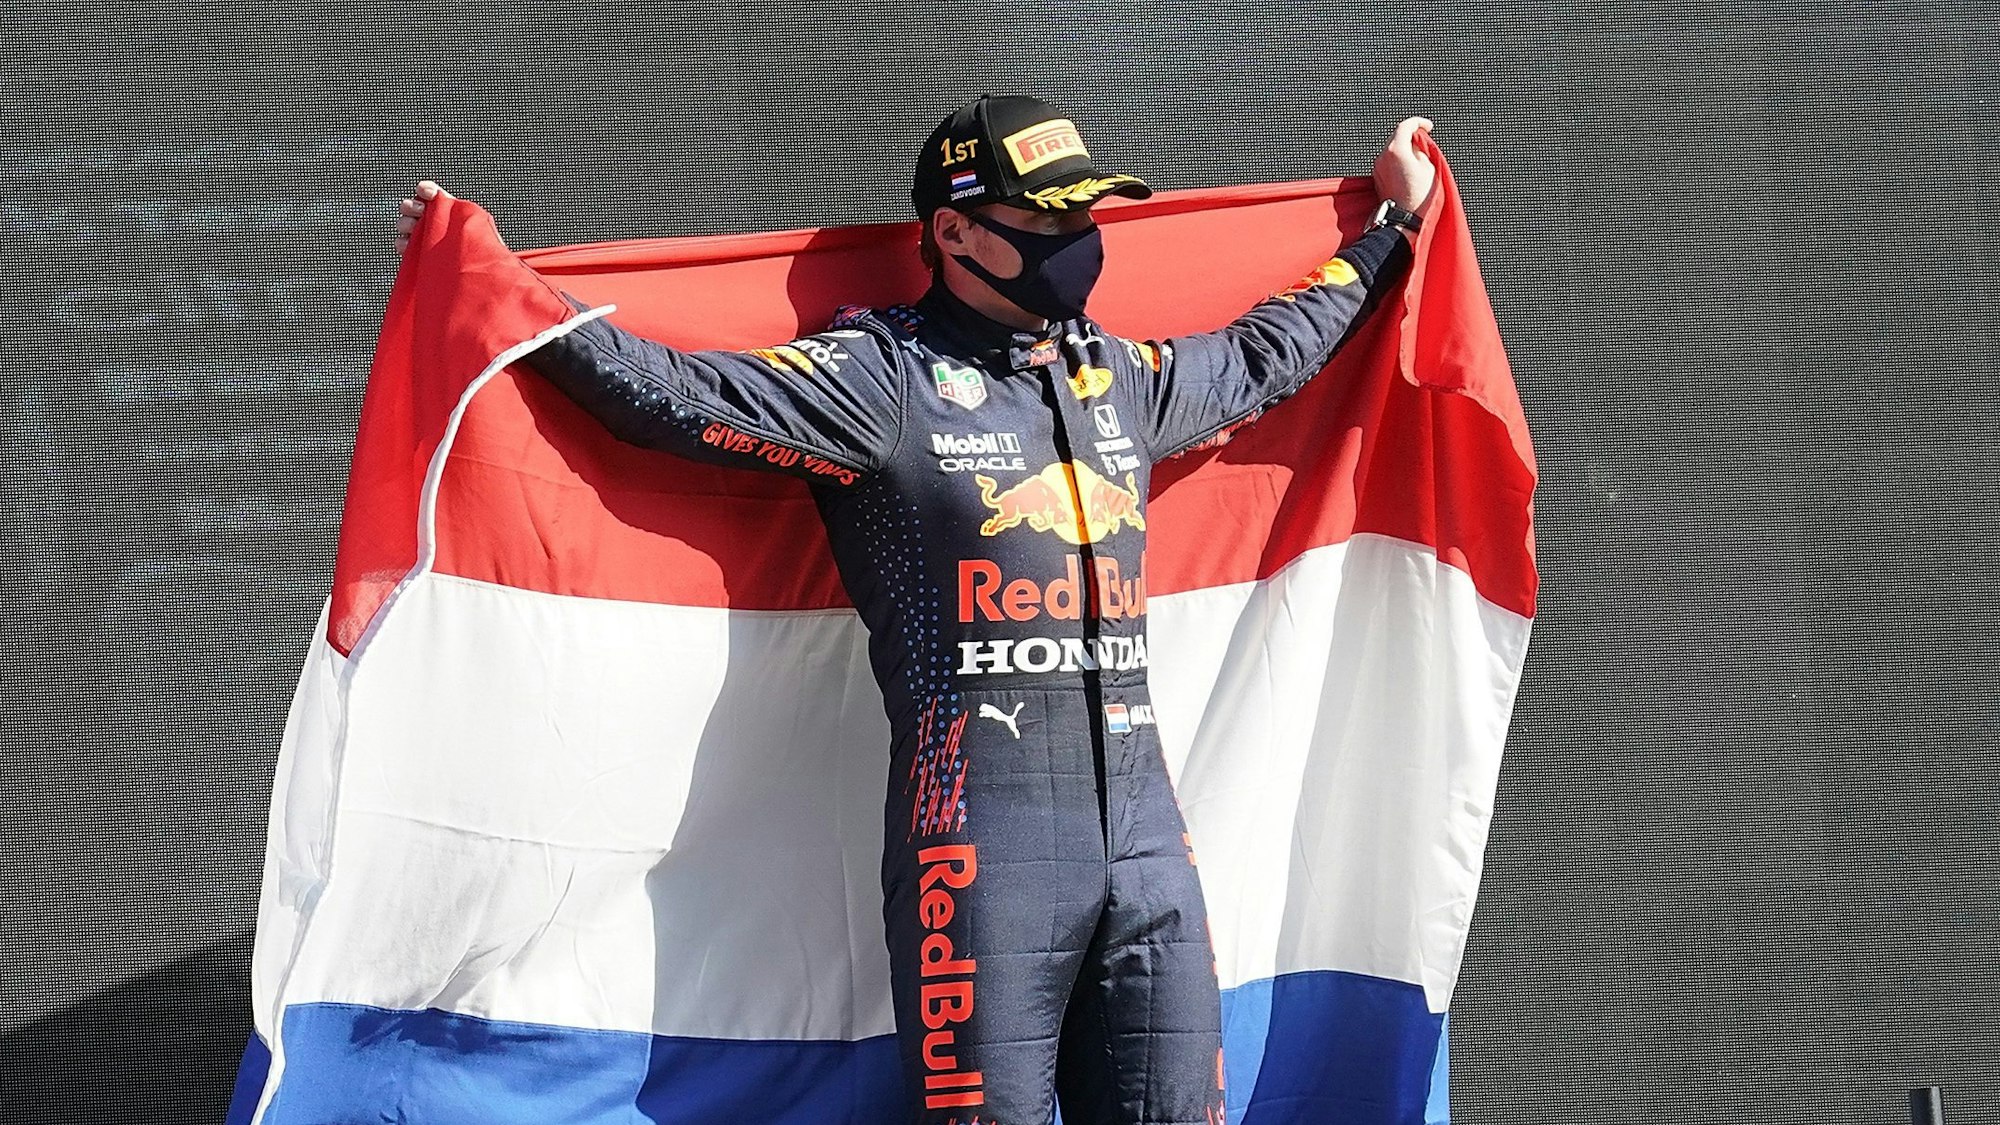 Sieger Max Verstappen aus den Niederlanden vom Team Red Bull Racing Honda hält eine niederländische Fahne.